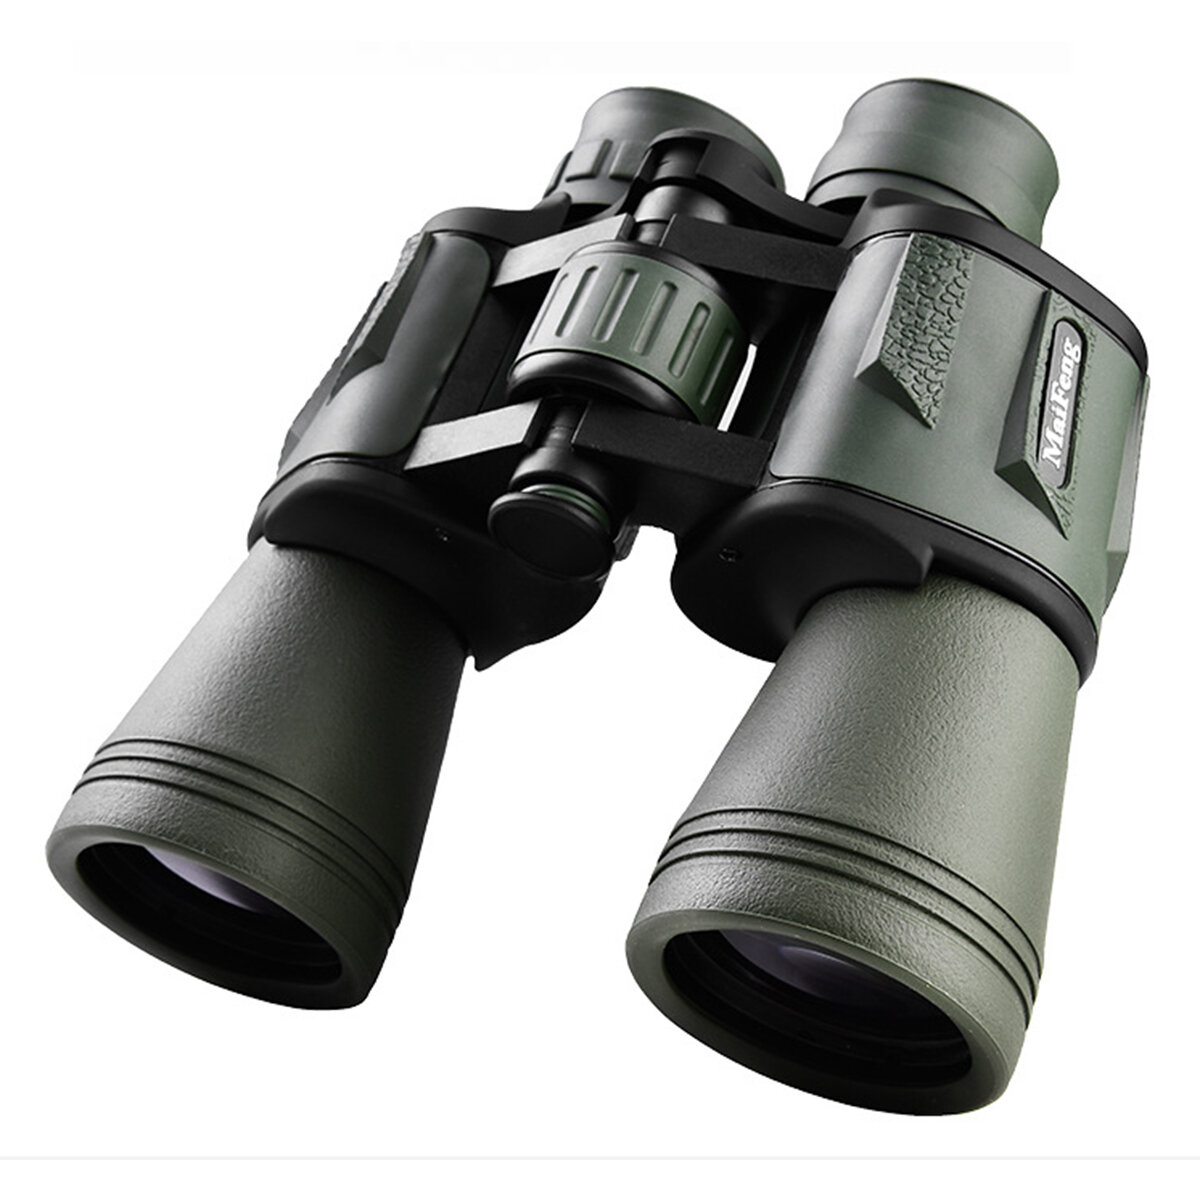 20X50 télescope professionnel haute puissance longue portée HD jumelles Outddor Vision nocturne Camping chasse voyage